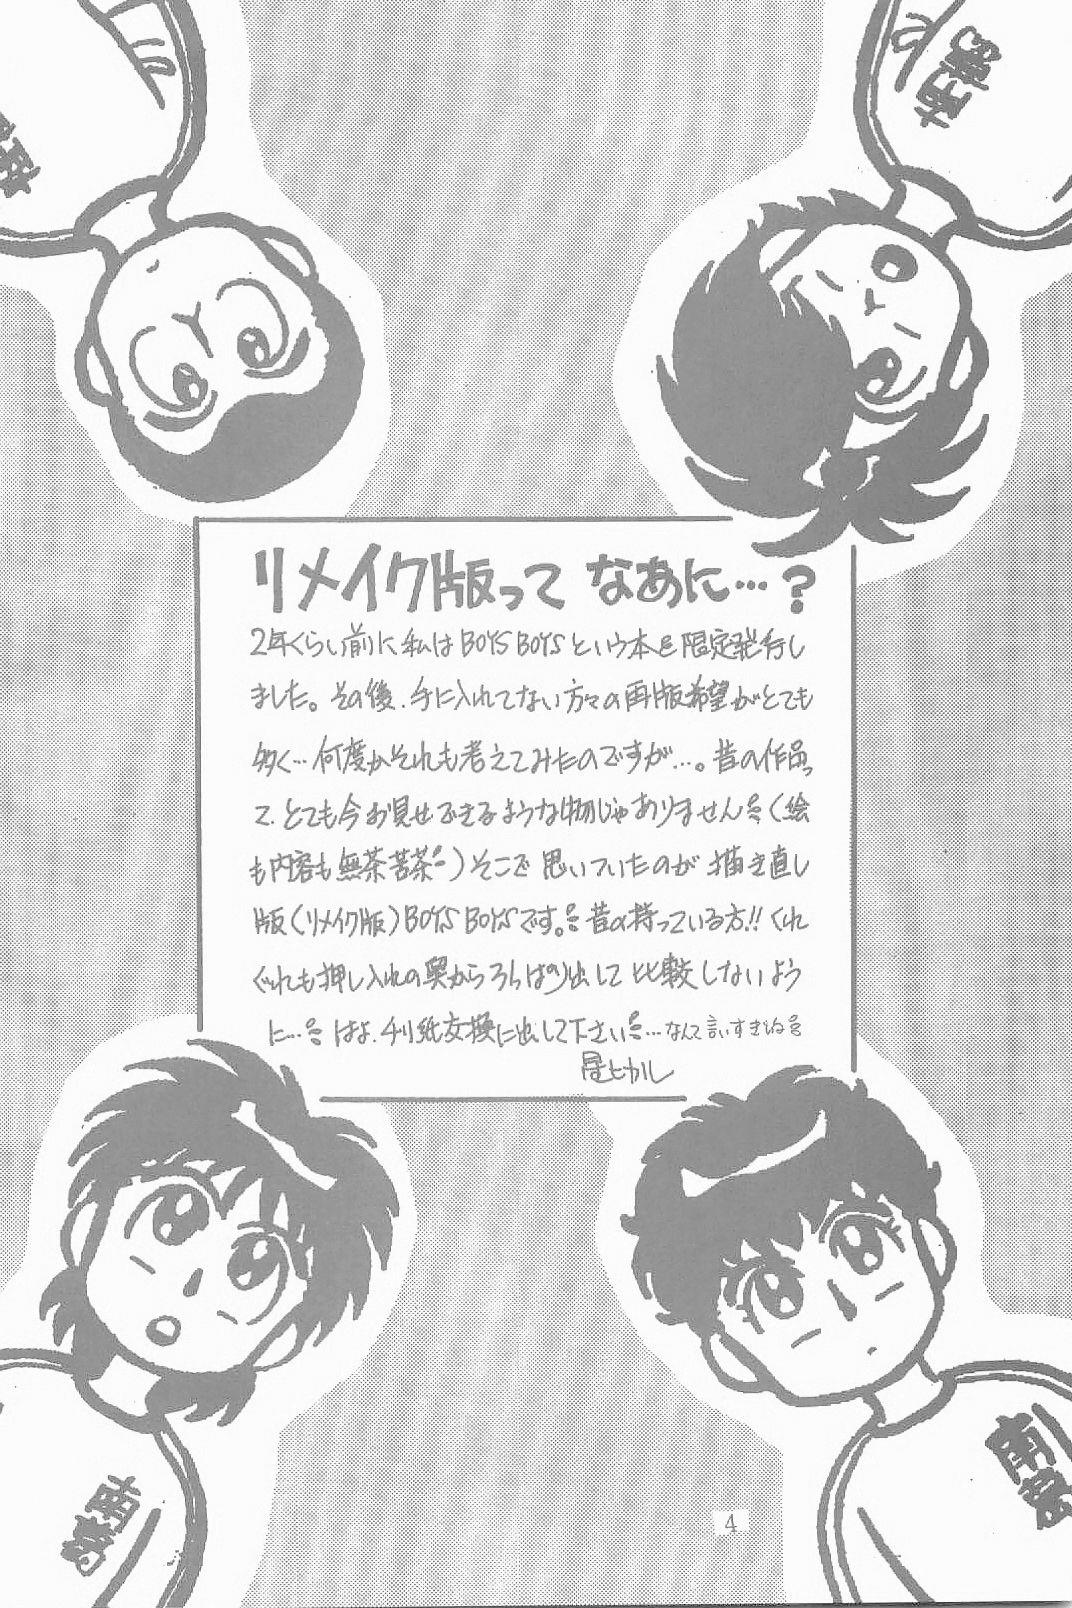 De Quatro BOYS BOYS Remake Ban - Captain tsubasa Comendo - Page 5